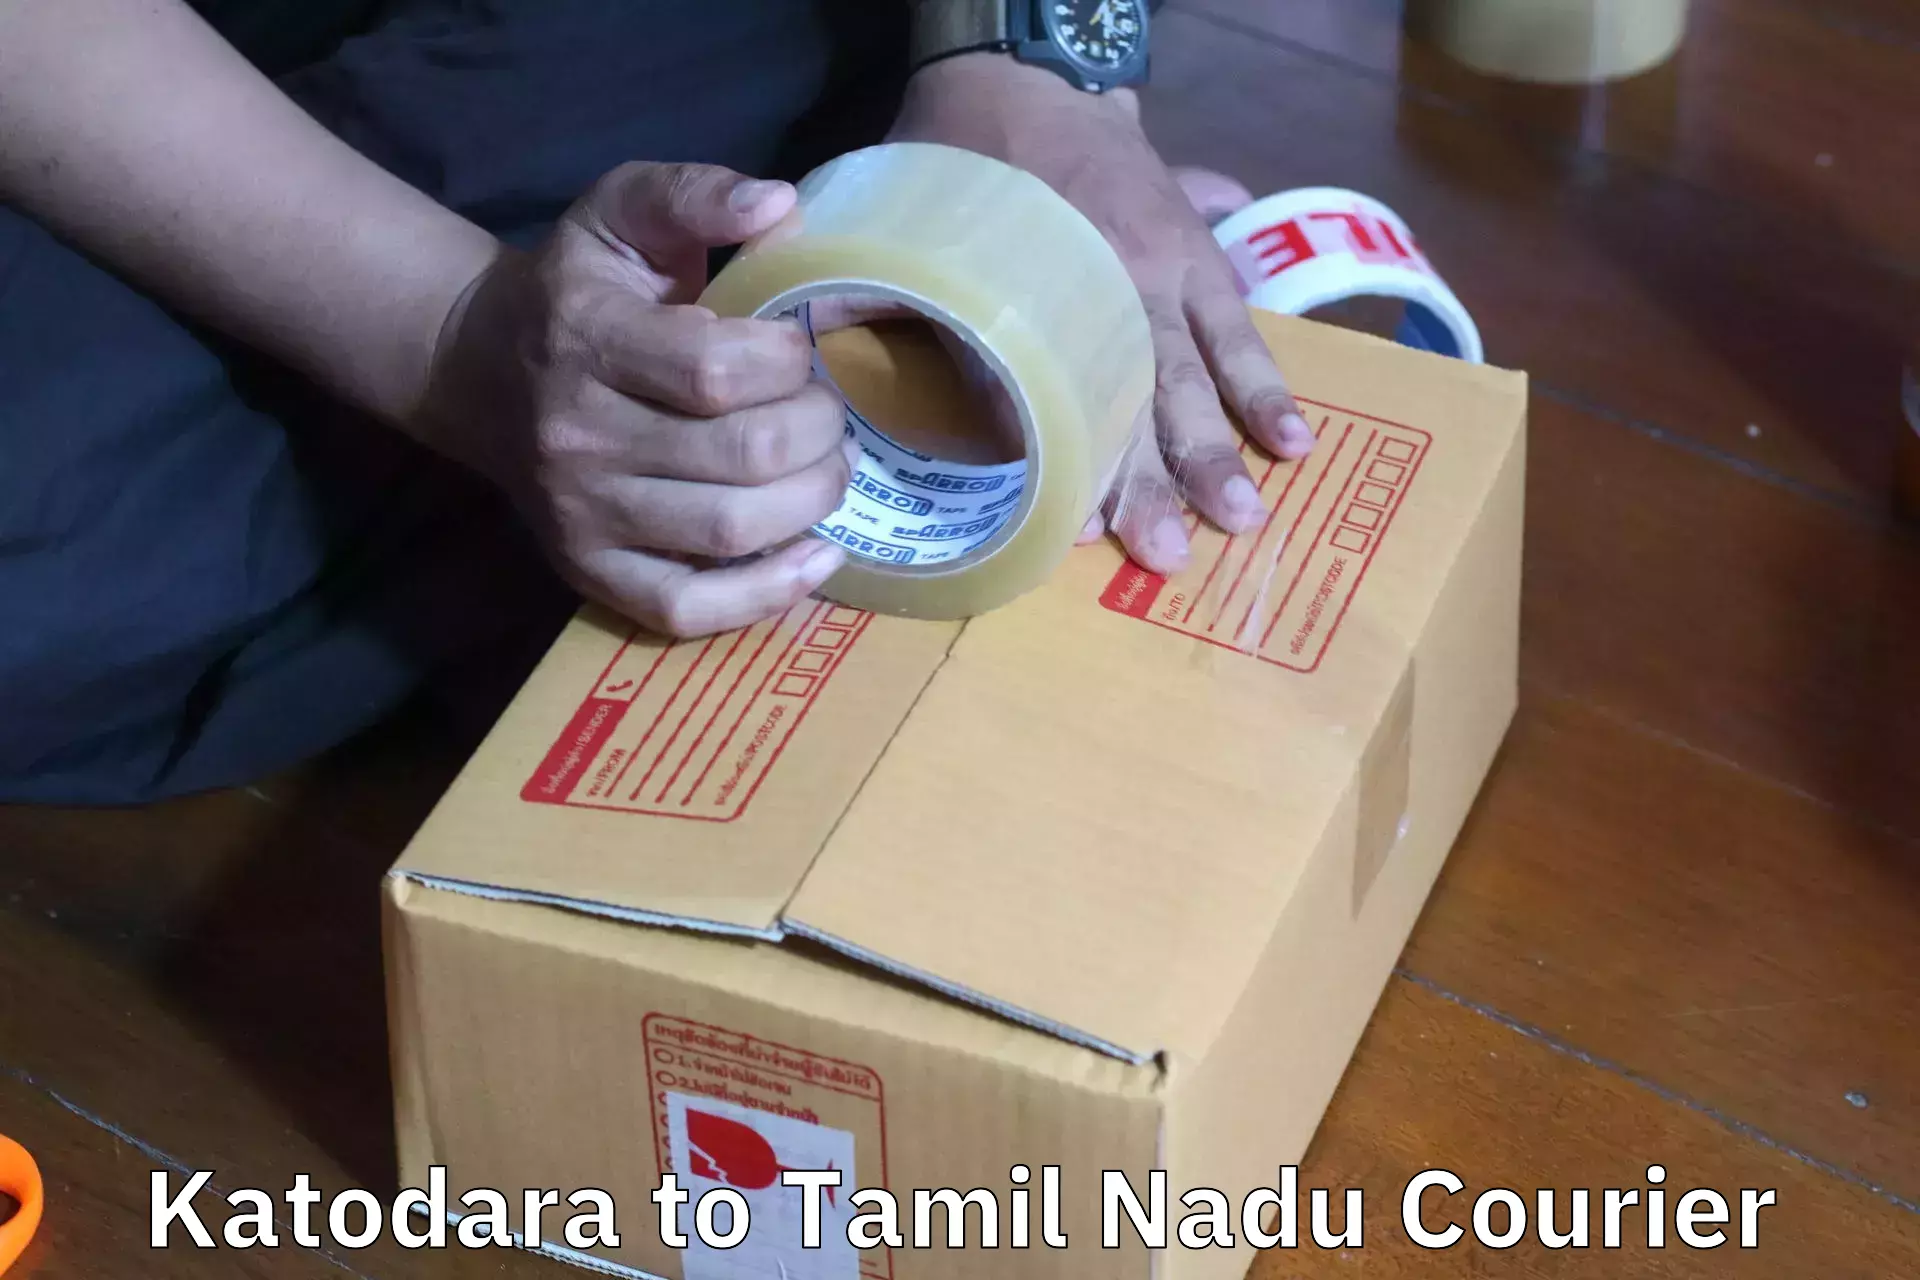 Professional furniture movers Katodara to Chennai Port